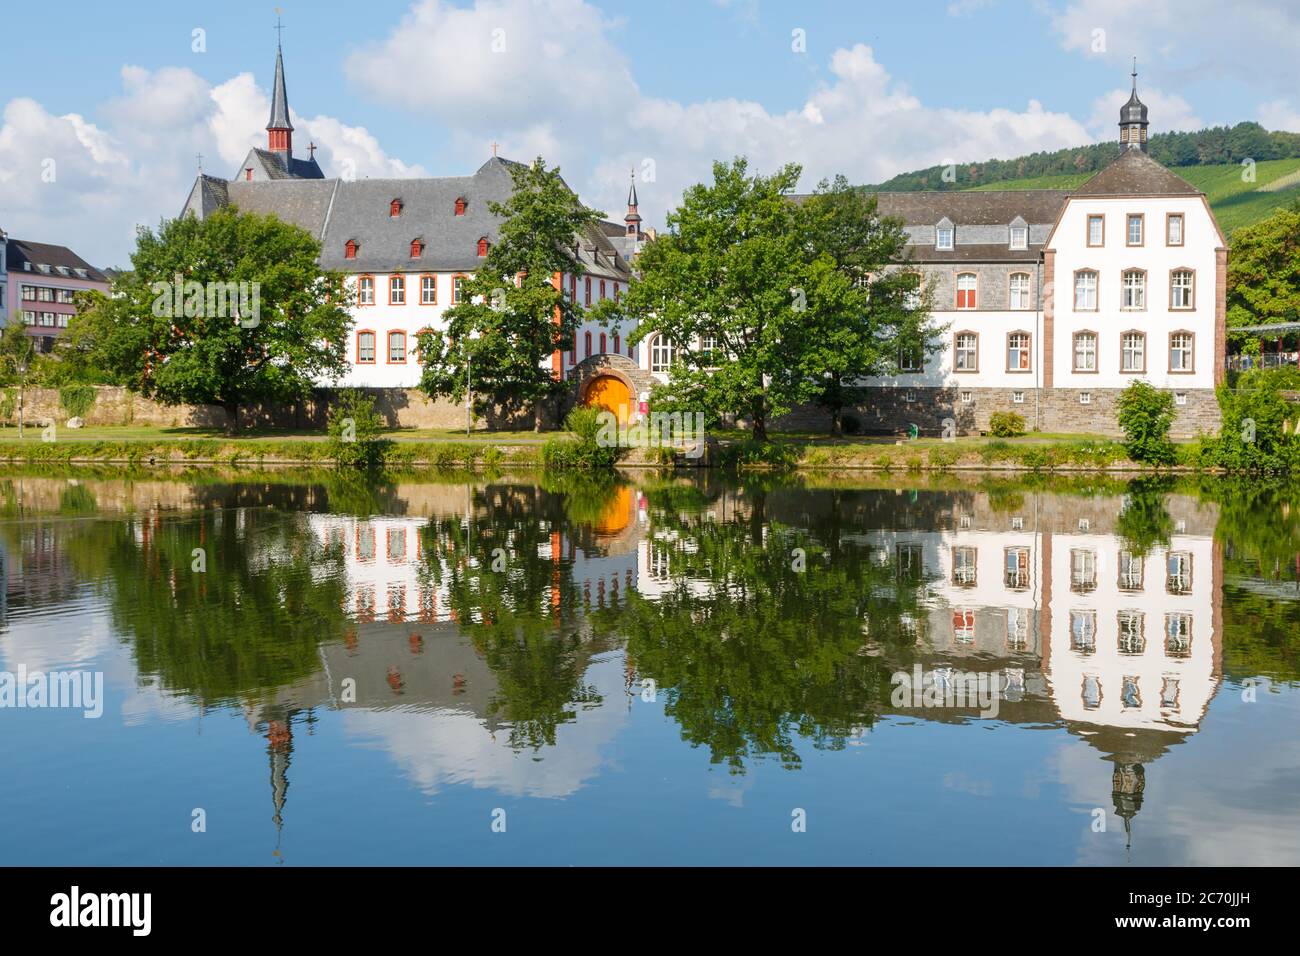 Berkastel-Kues an der Mosel mit Spiegelung im Wasser, Rheinland-Pfalz, Allemagne Banque D'Images